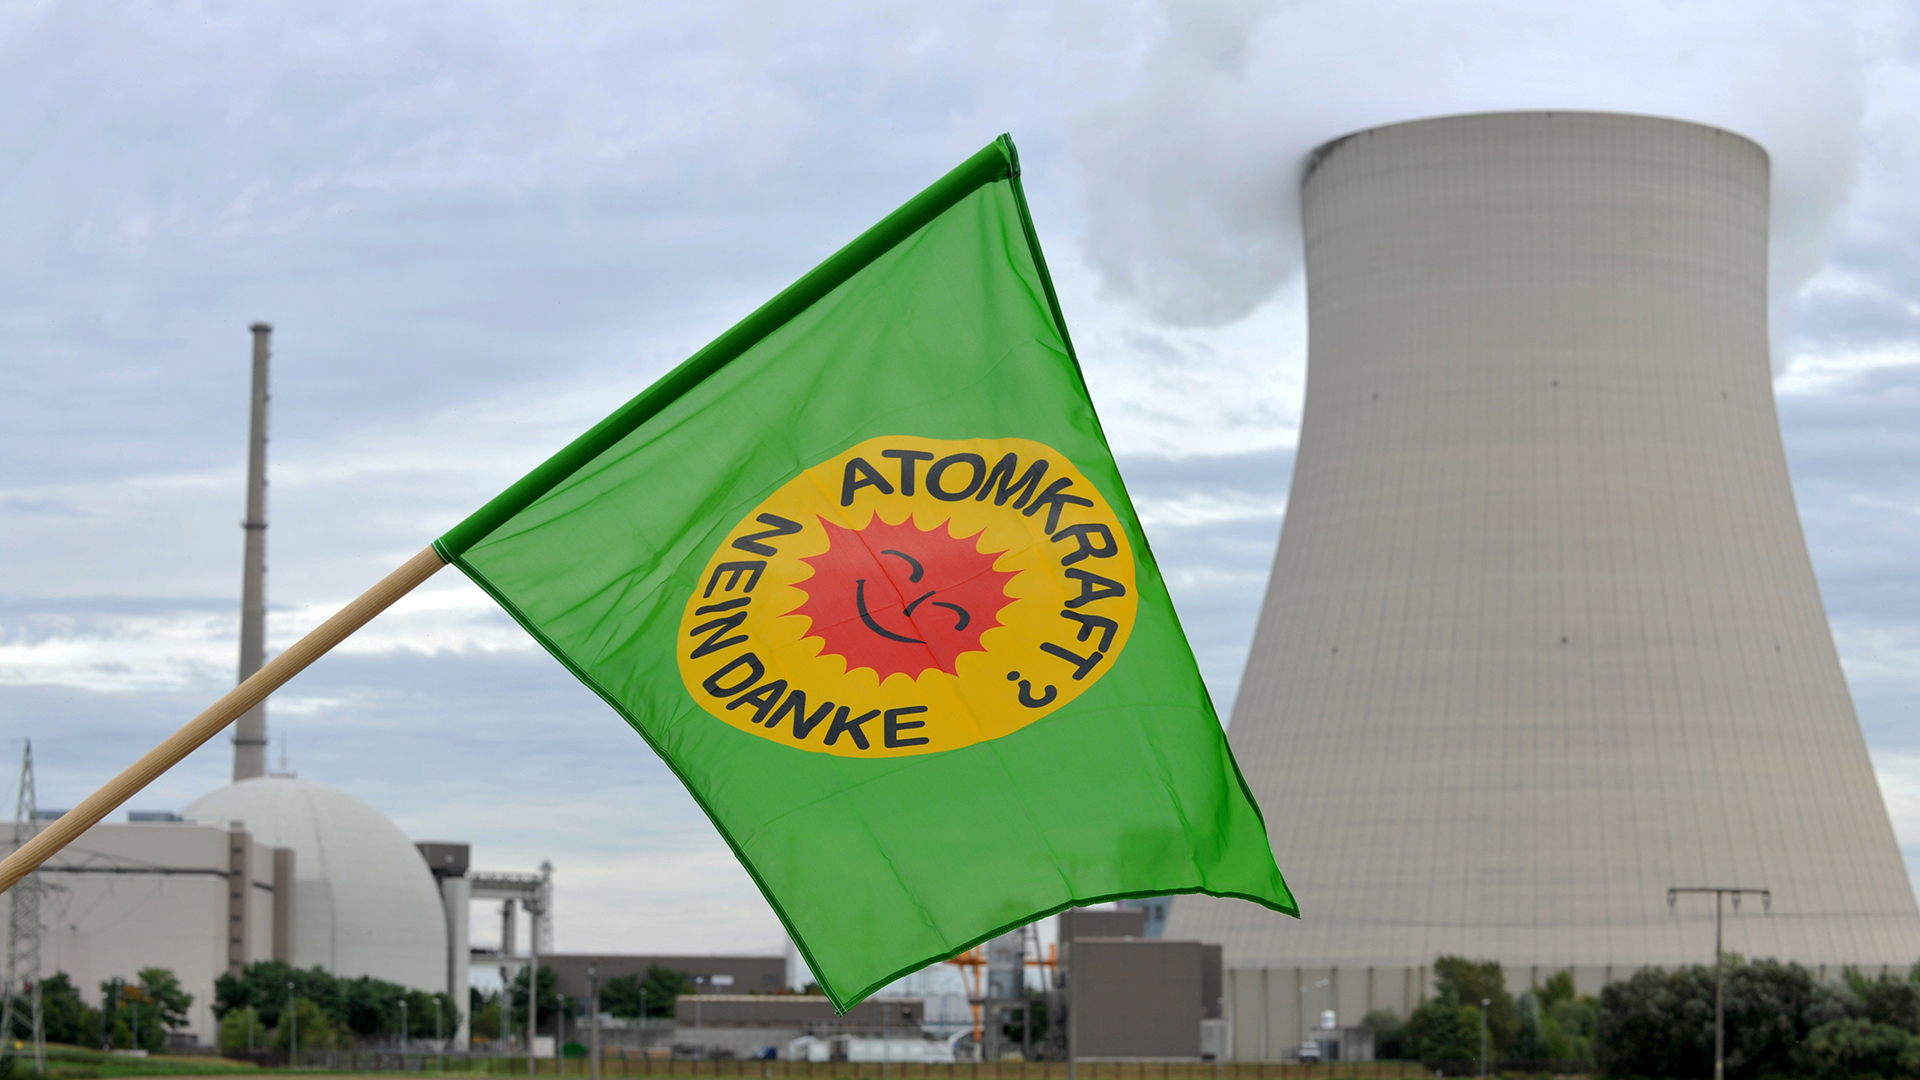 Eine Fahne der Grünen mit der Aufschrift "Atomkraft Nein Danke" weht am 15.09.2010 vor dem Atomkraftwerk Isar I in Essenbach. (Archivbild: 15.09.2010) | picture alliance / dpa